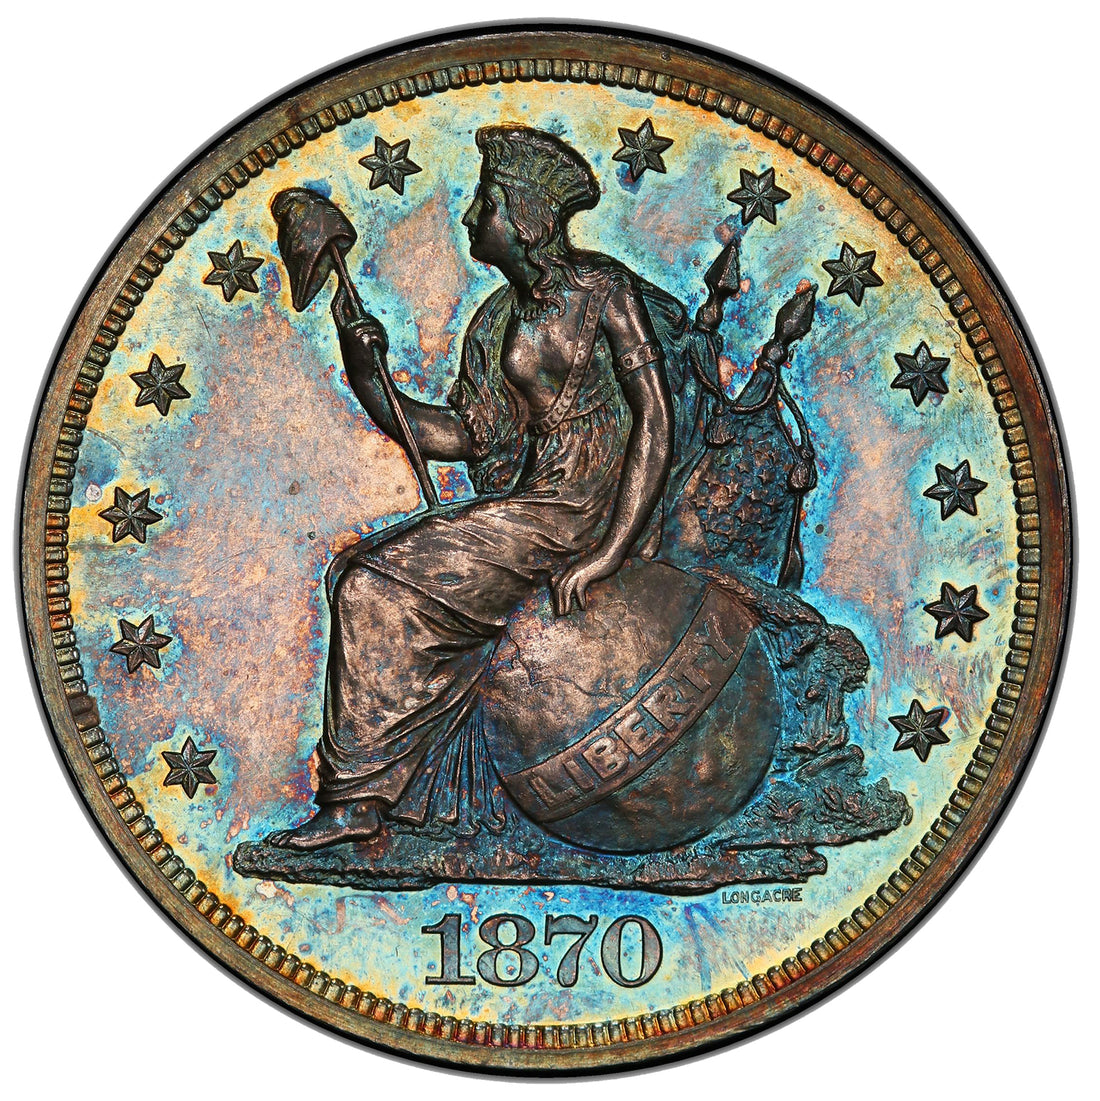 Half Cents – Mount Vernon Coin